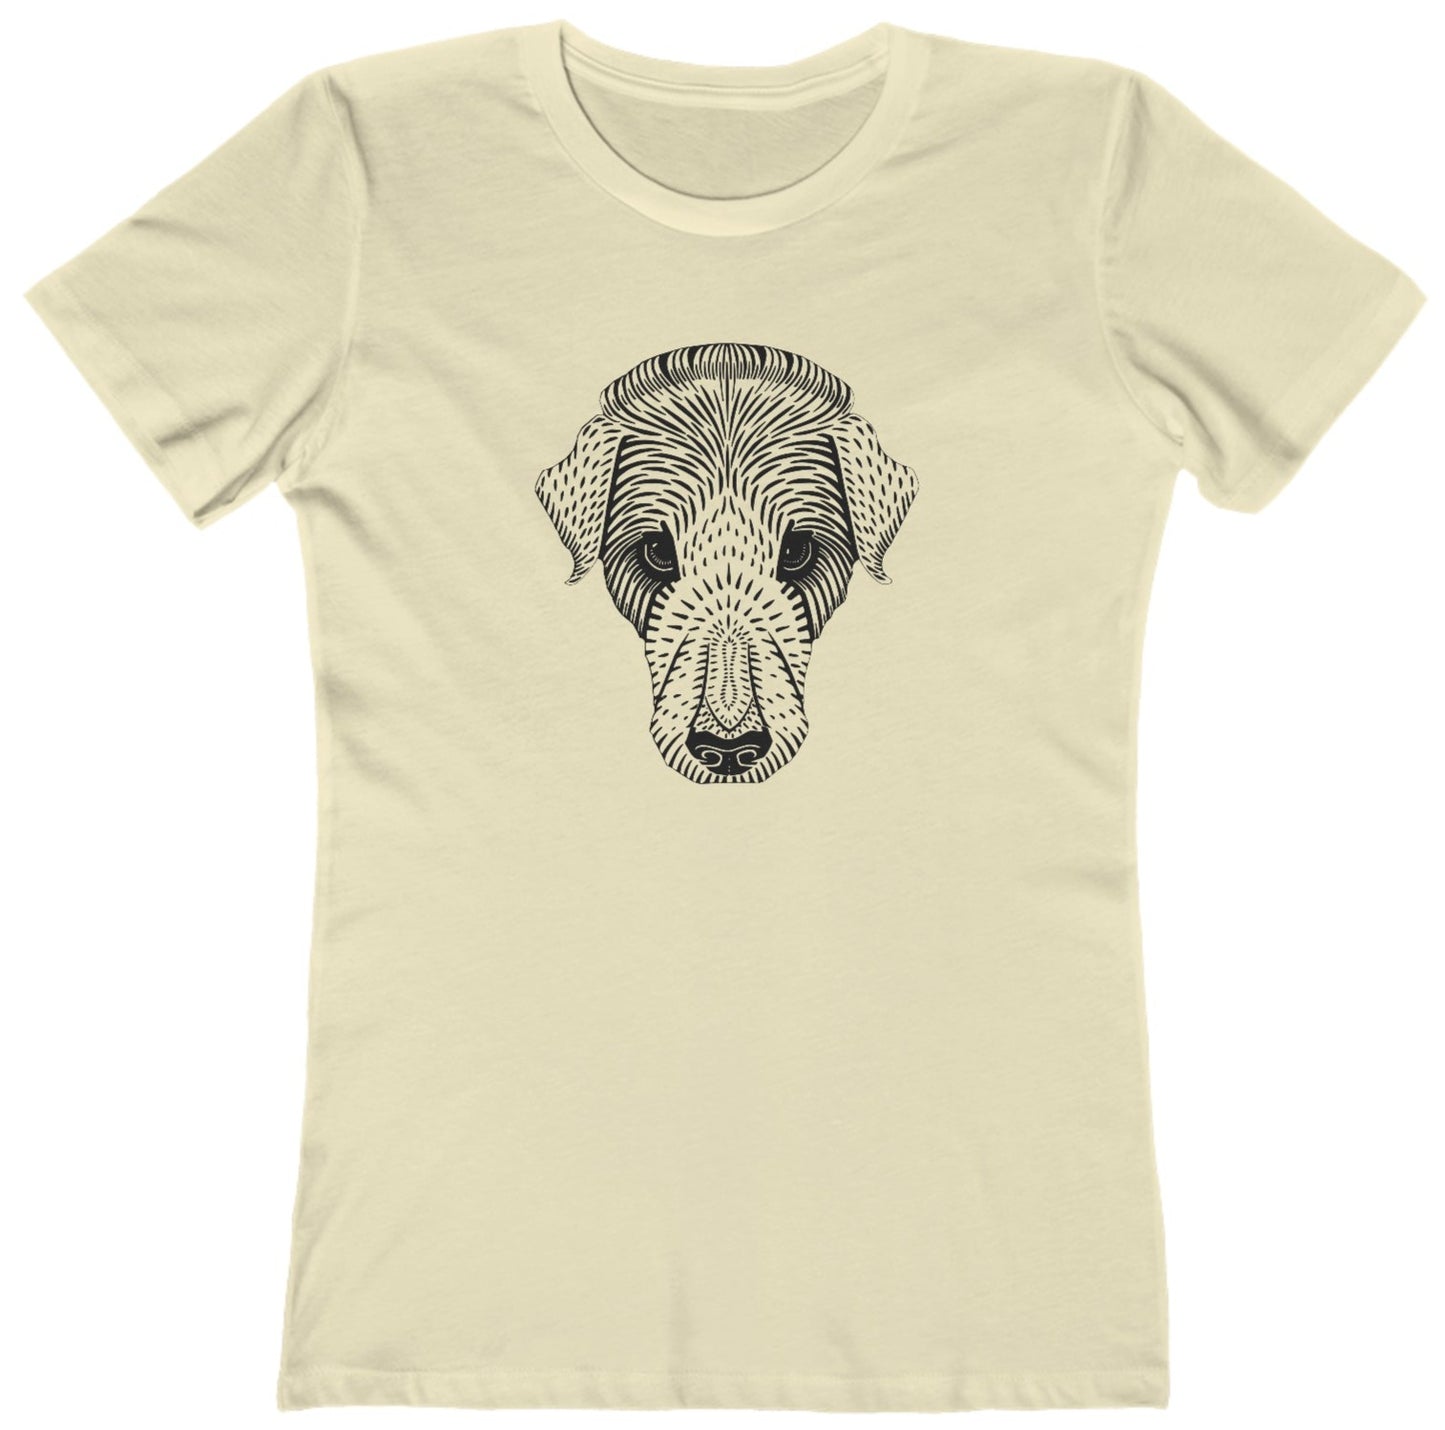 Dog best friend t shirt